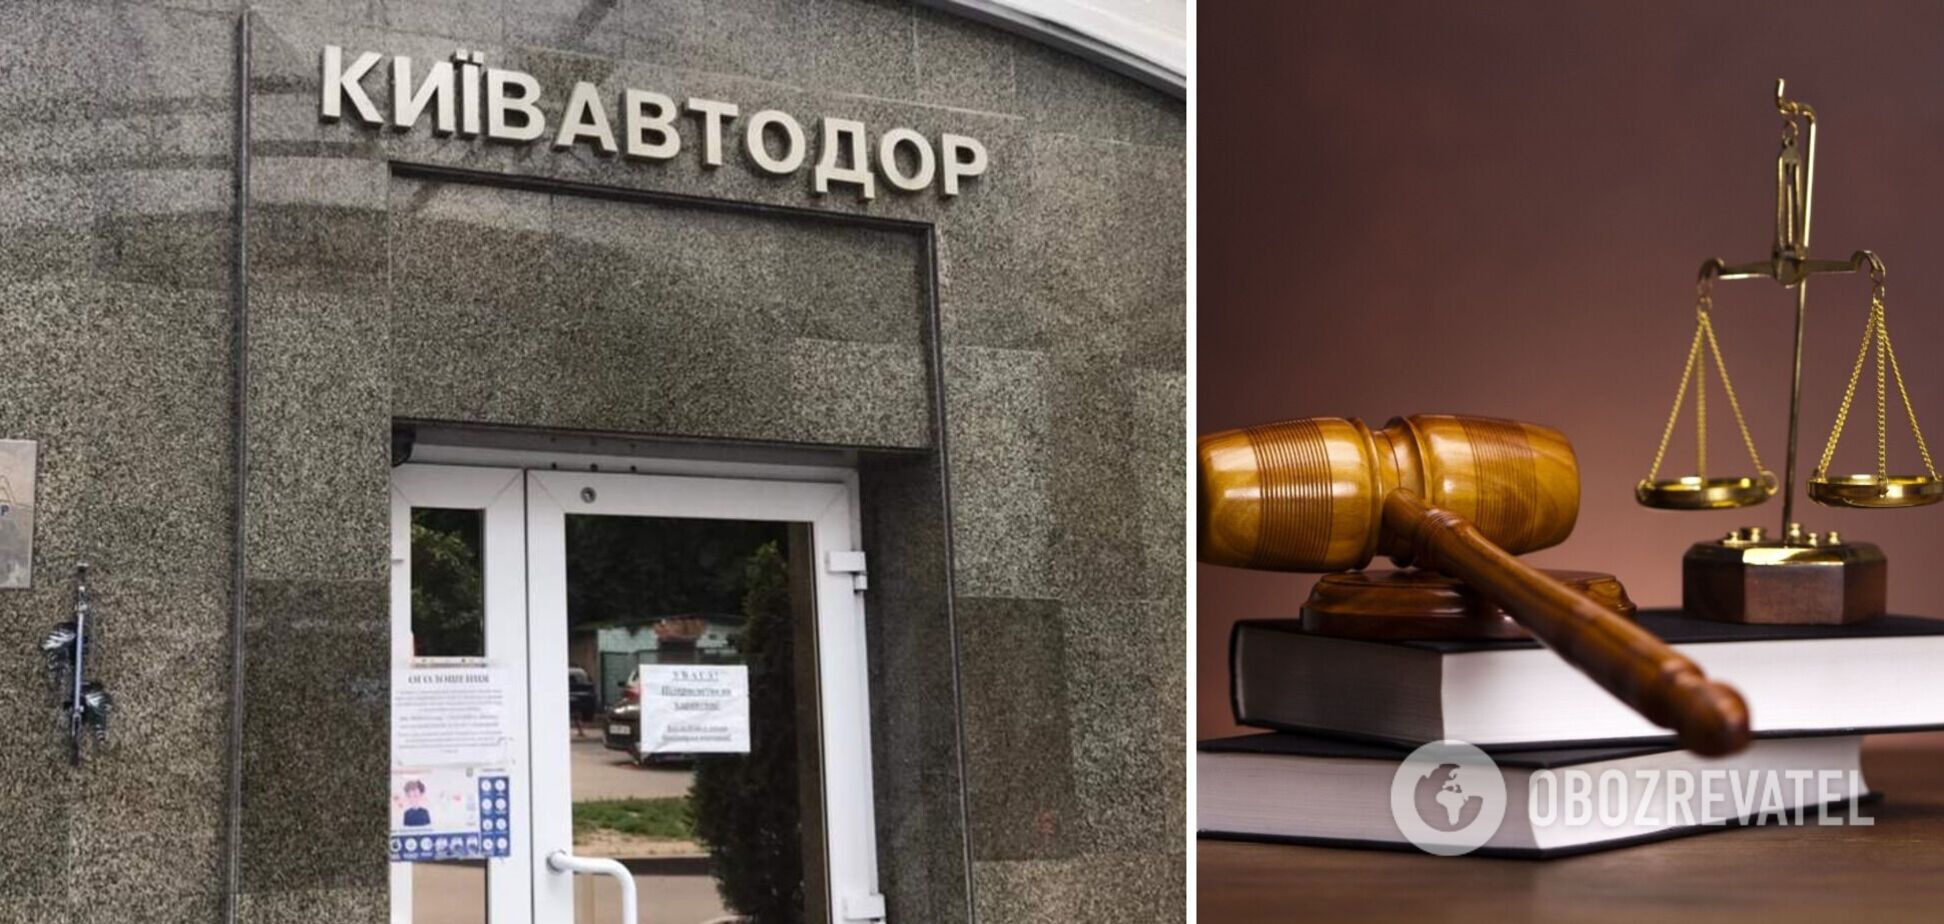 Прокуроры по делу Киевавтодора потребовали изъятия несуществующих сигарет: суд отказал. Эксклюзив